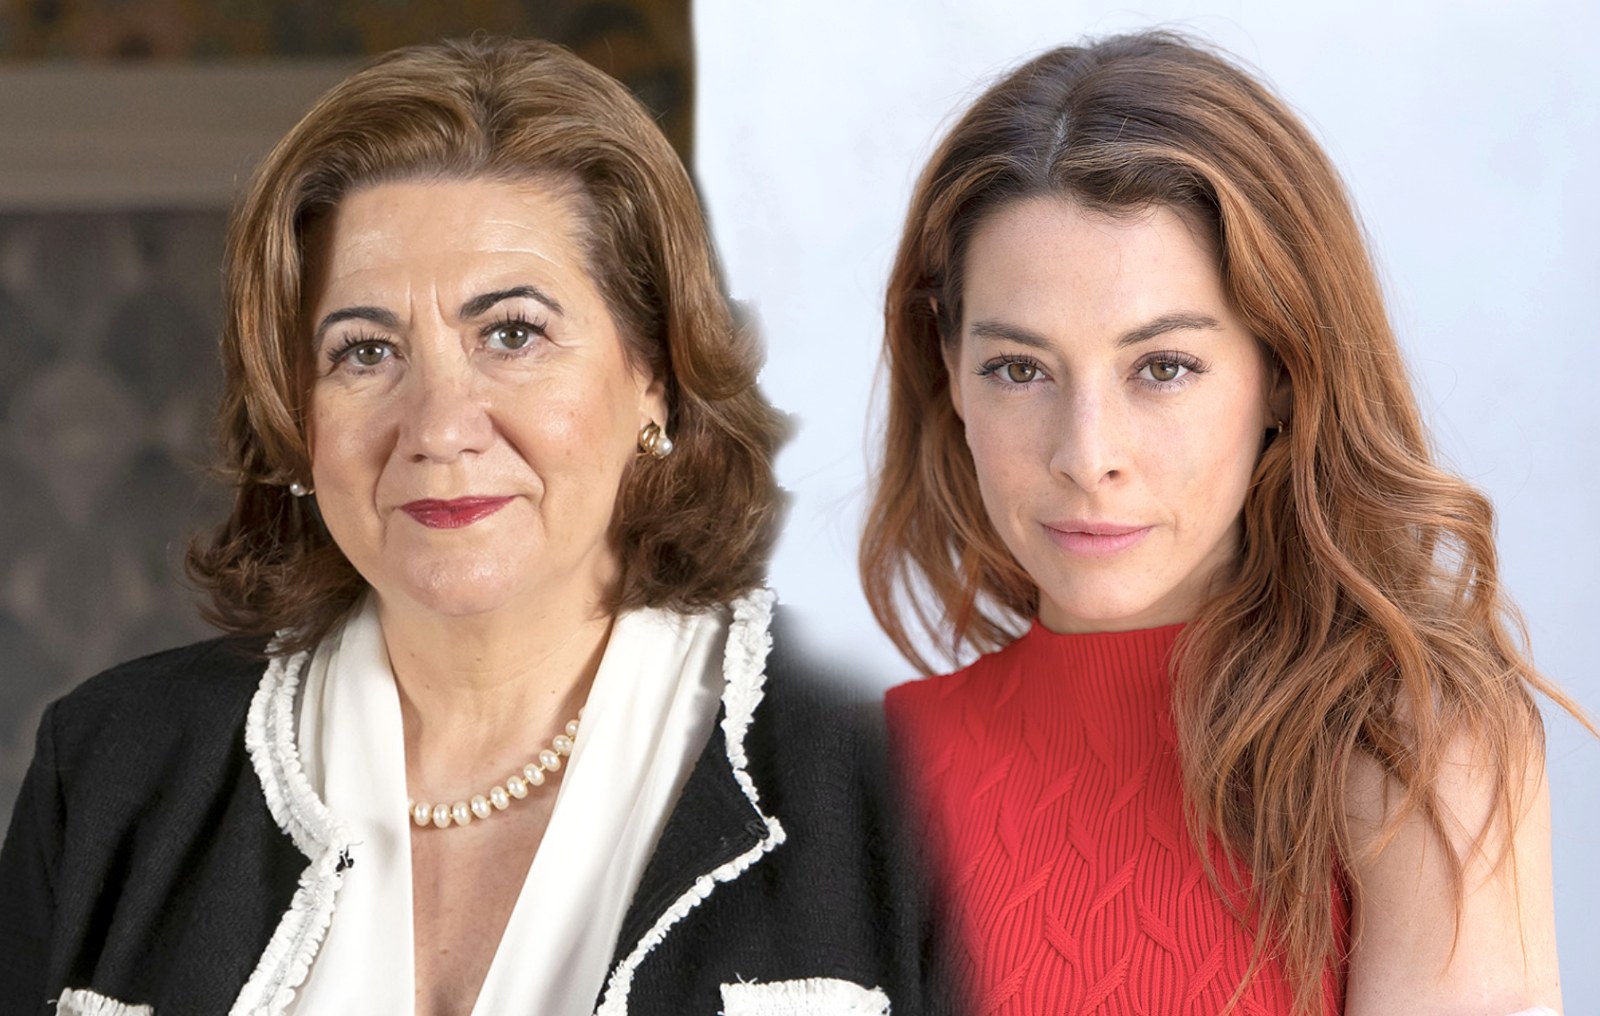 Luisa Martín y Belén Écija se incorporan al reparto de la serie diaria de La 1 4 estrellas